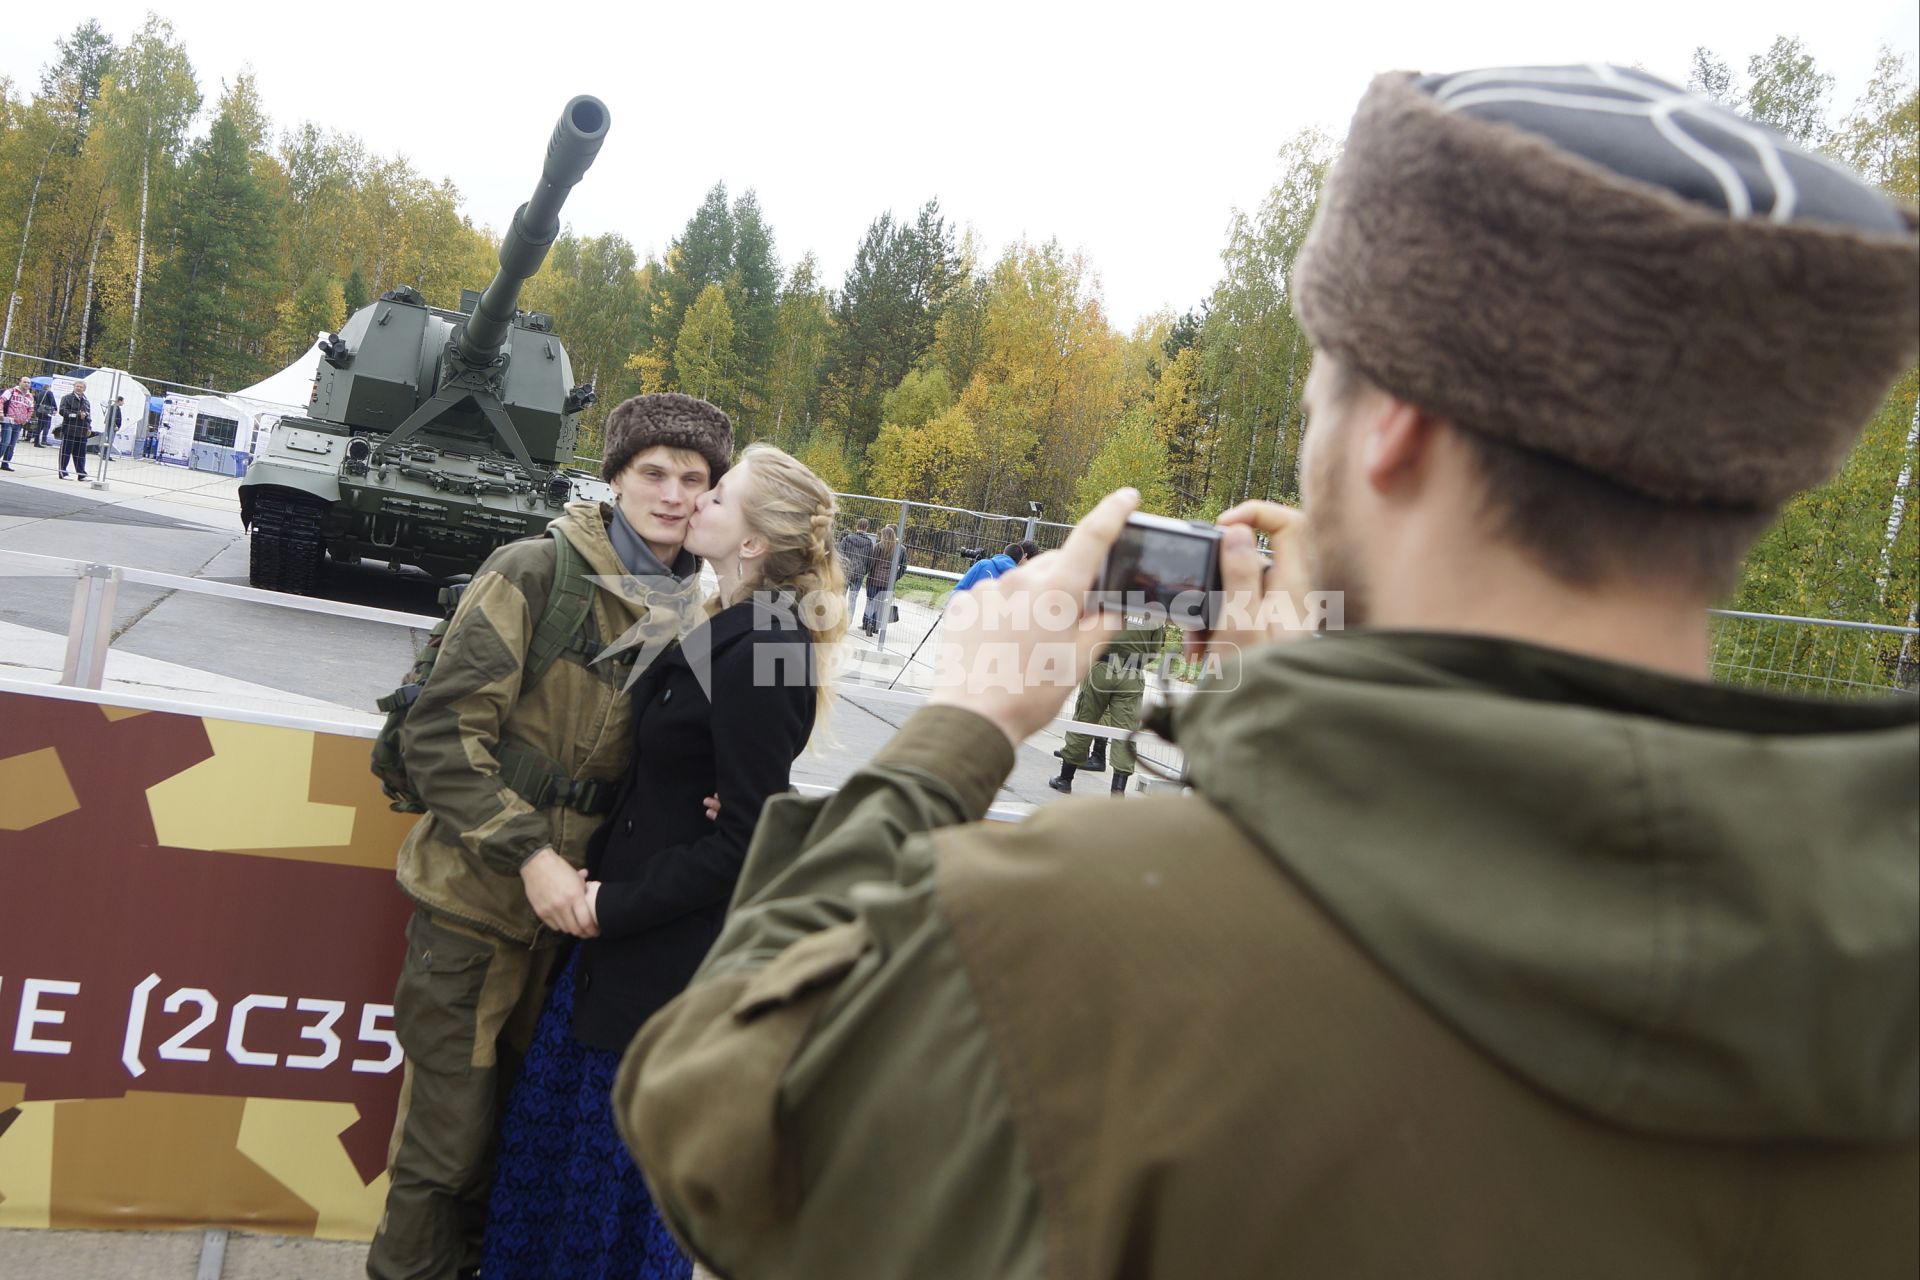 Нижний Тагил. Влюбленная пара фотографируется на фоне самоходной артиллерийской установки `Коалиция-СВ` на 10-ой международной выставке вооружений `Russia Arms Expo - 2015`.